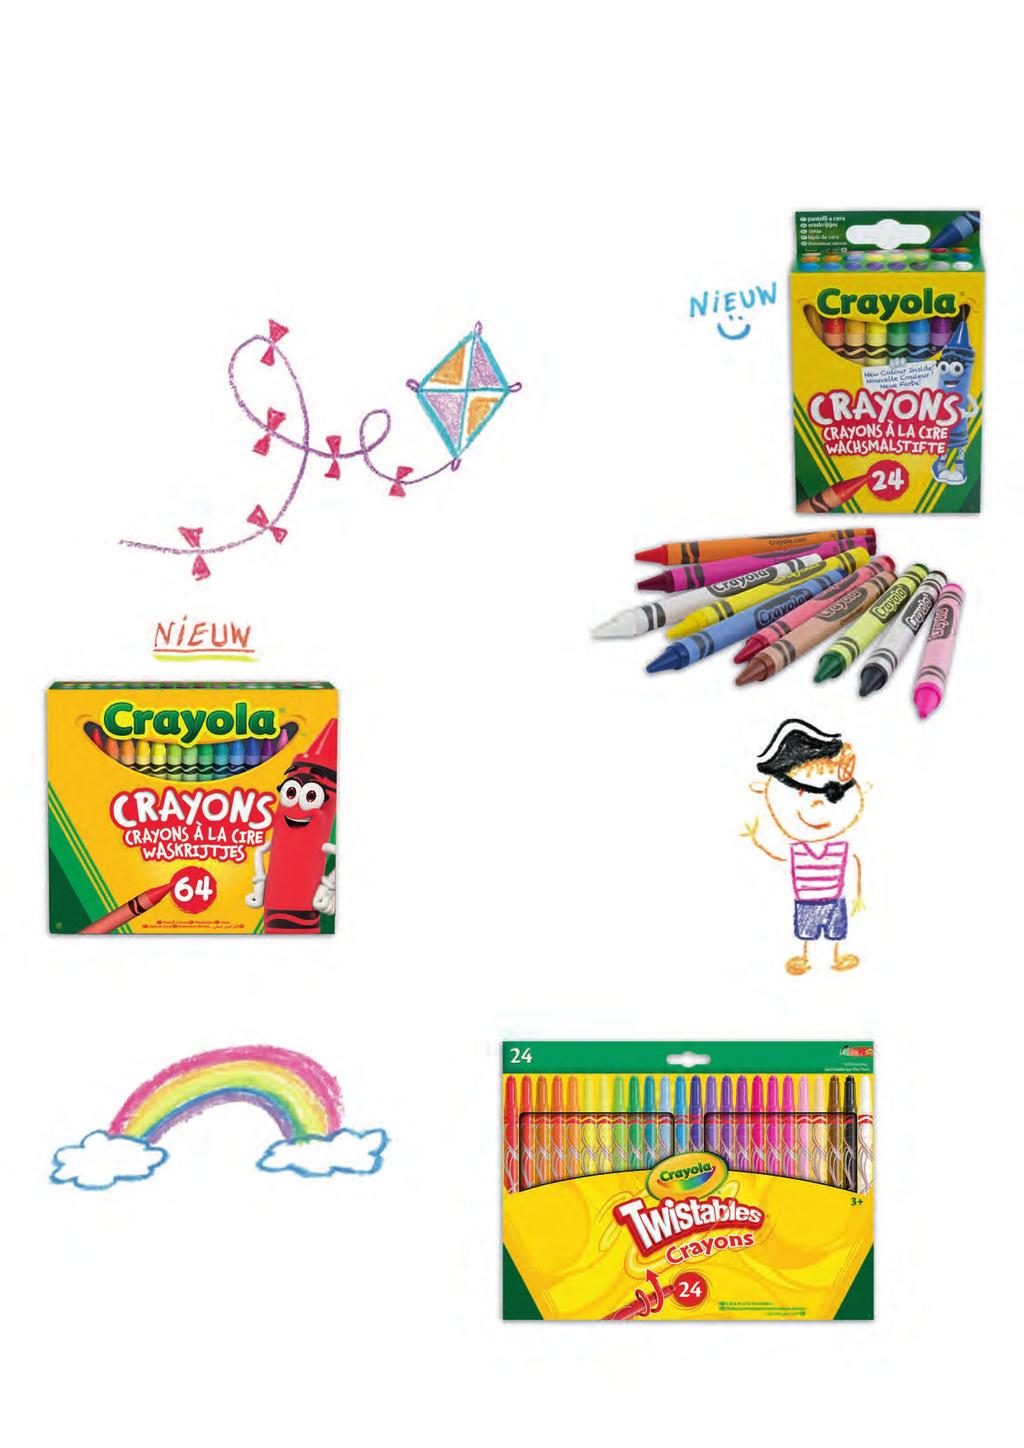 De kwaliteitsstandaarden van Crayola op waskrijt zijn gebaseerd op vier criteria: kleurkwaliteit, prestaties, verpakking en veiligheid.